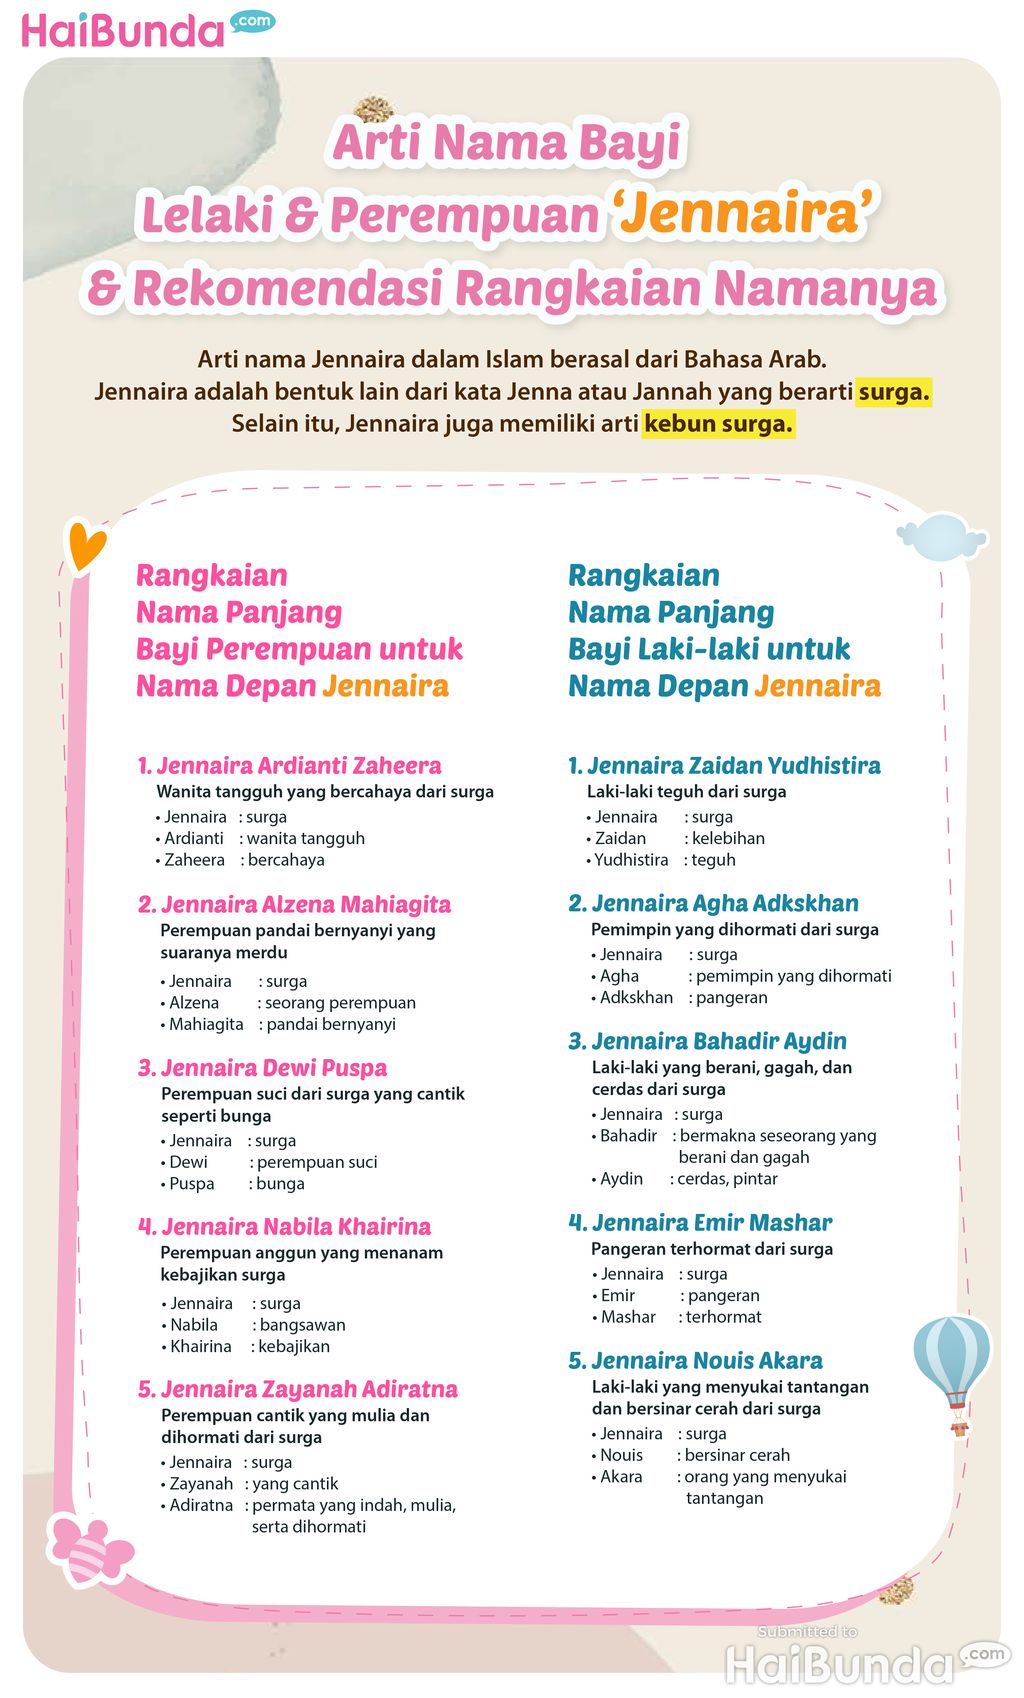 Infografis Arti Nama Bayi Lelaki & Perempuan ‘Jennaira’ & Rekomendasi Rangkaian Namanya